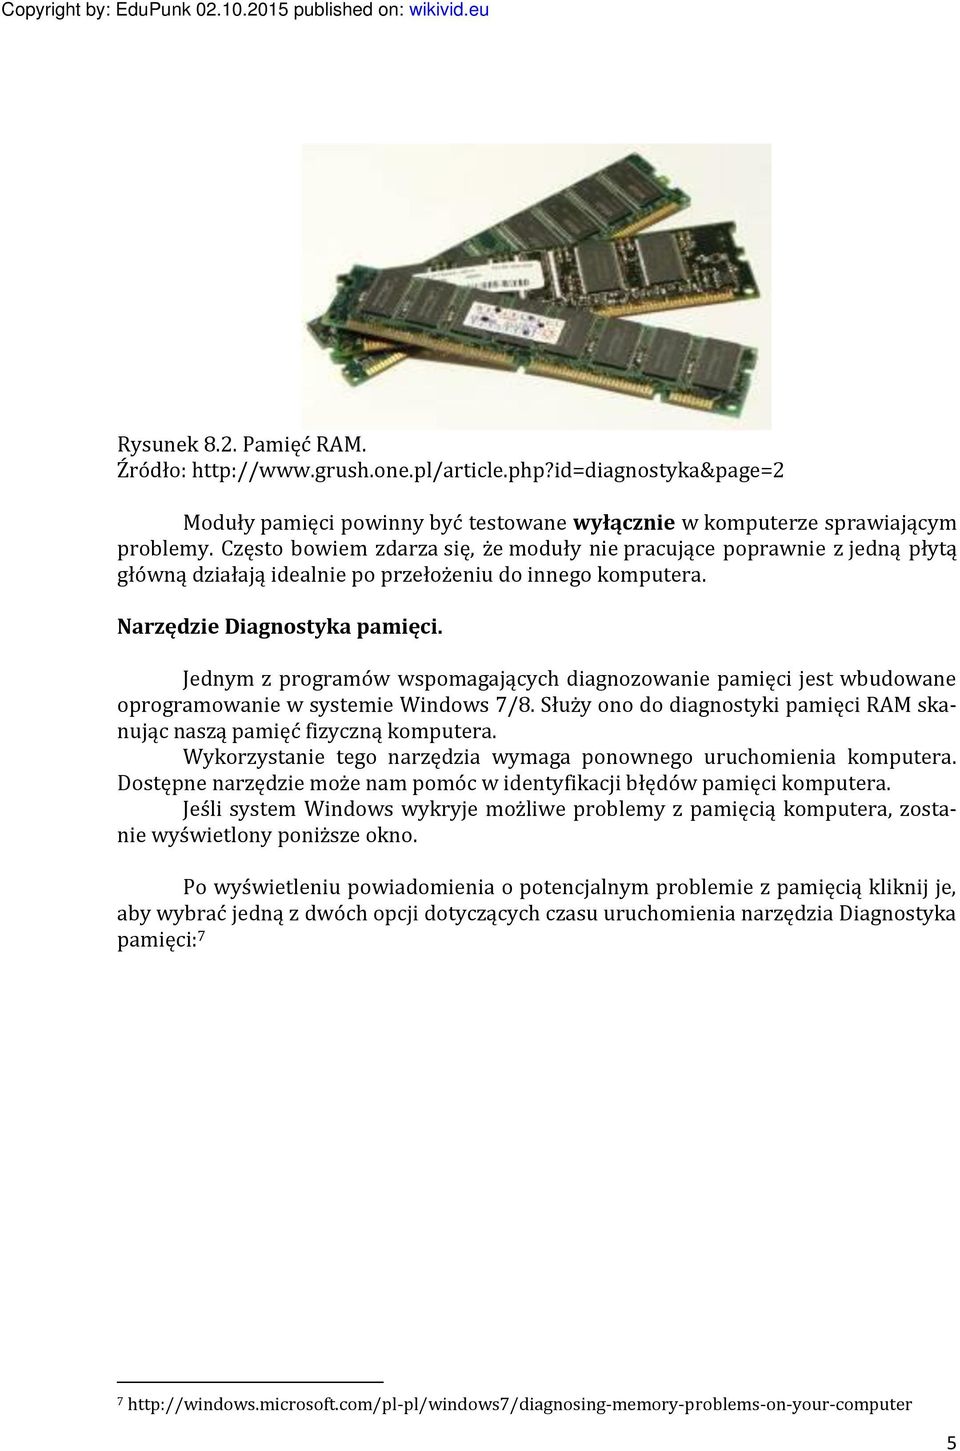 Jednym z programów wspomagających diagnozowanie pamięci jest wbudowane oprogramowanie w systemie Windows 7/8. Służy ono do diagnostyki pamięci RAM skanując naszą pamięć fizyczną komputera.